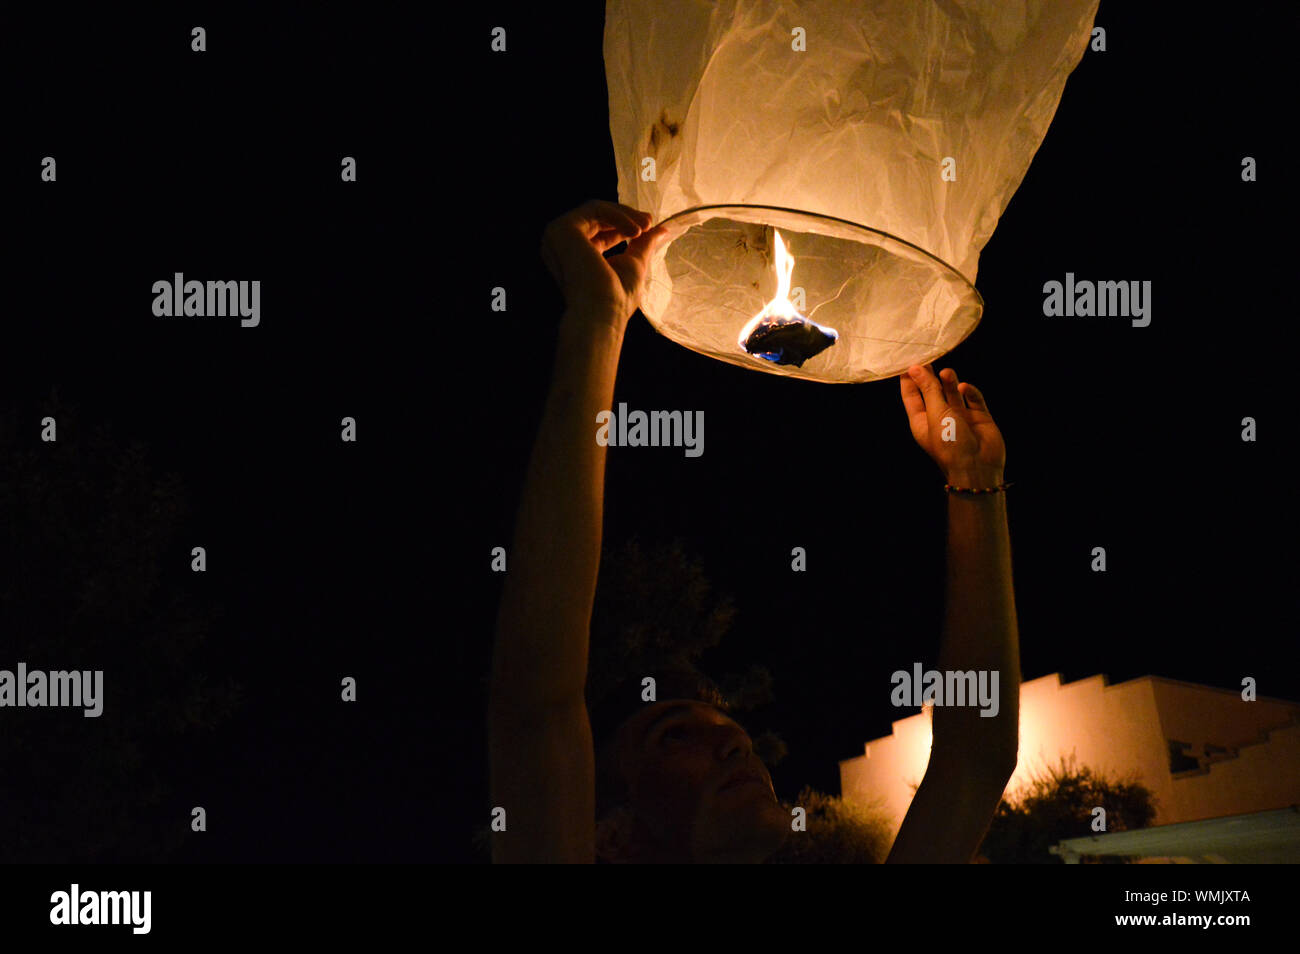 Man Releasing Paper Lantern At Night Stock Photo